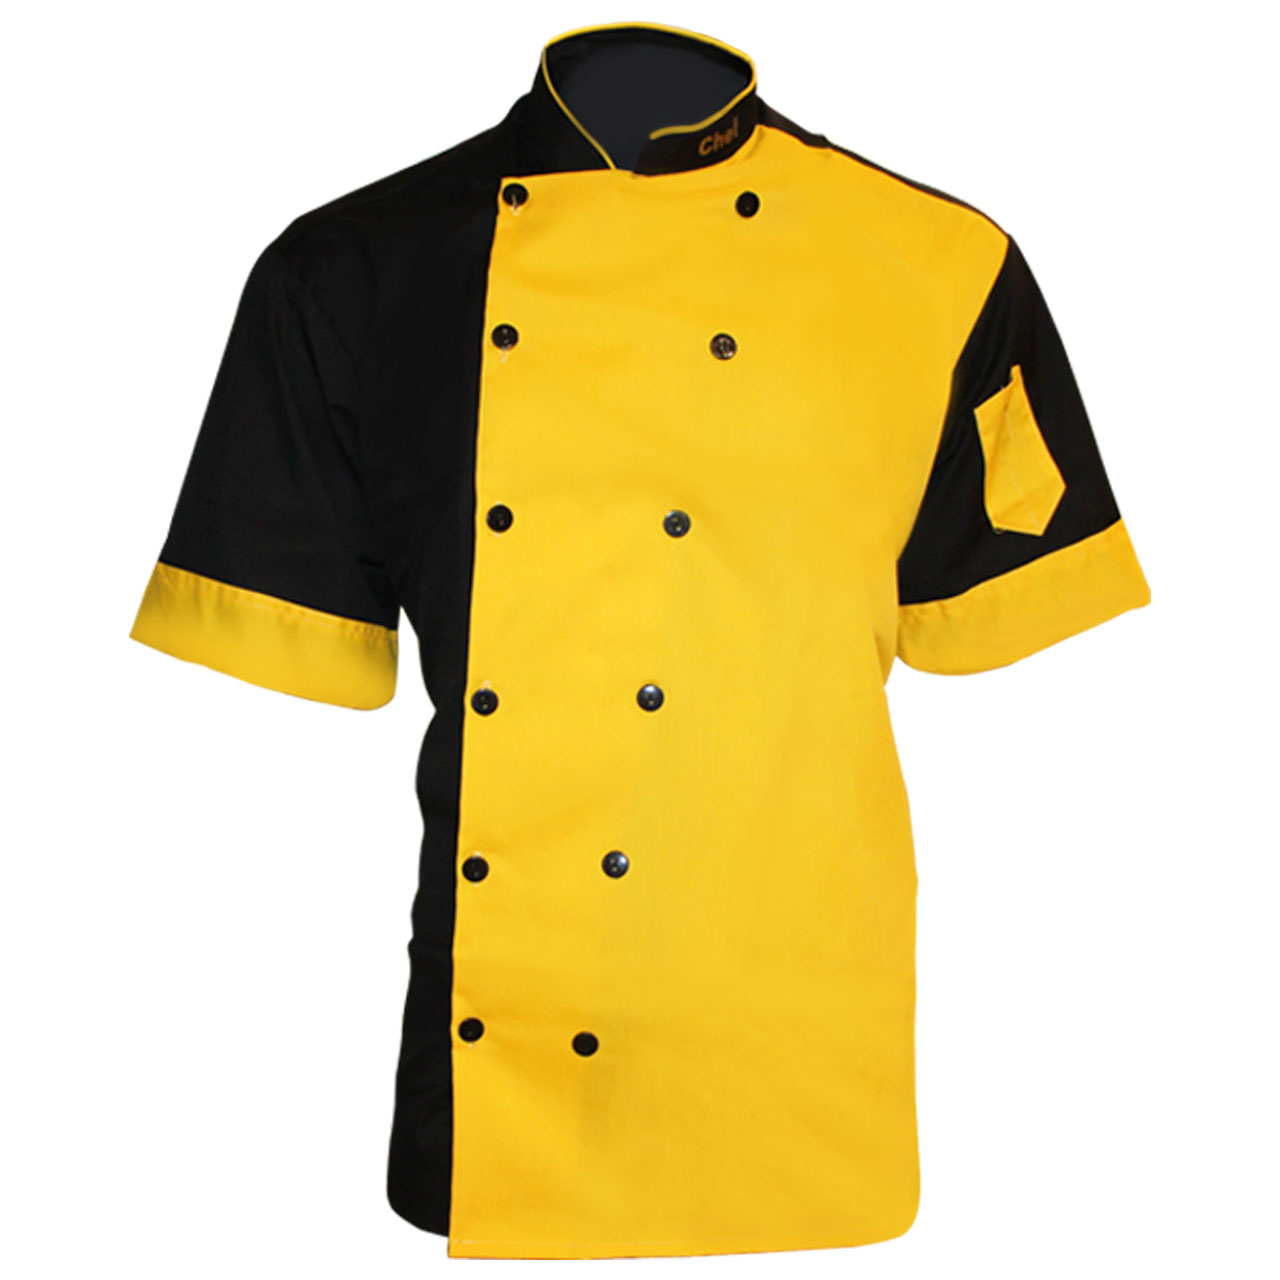 لباس کار مدل چف IGD رنگ زرد